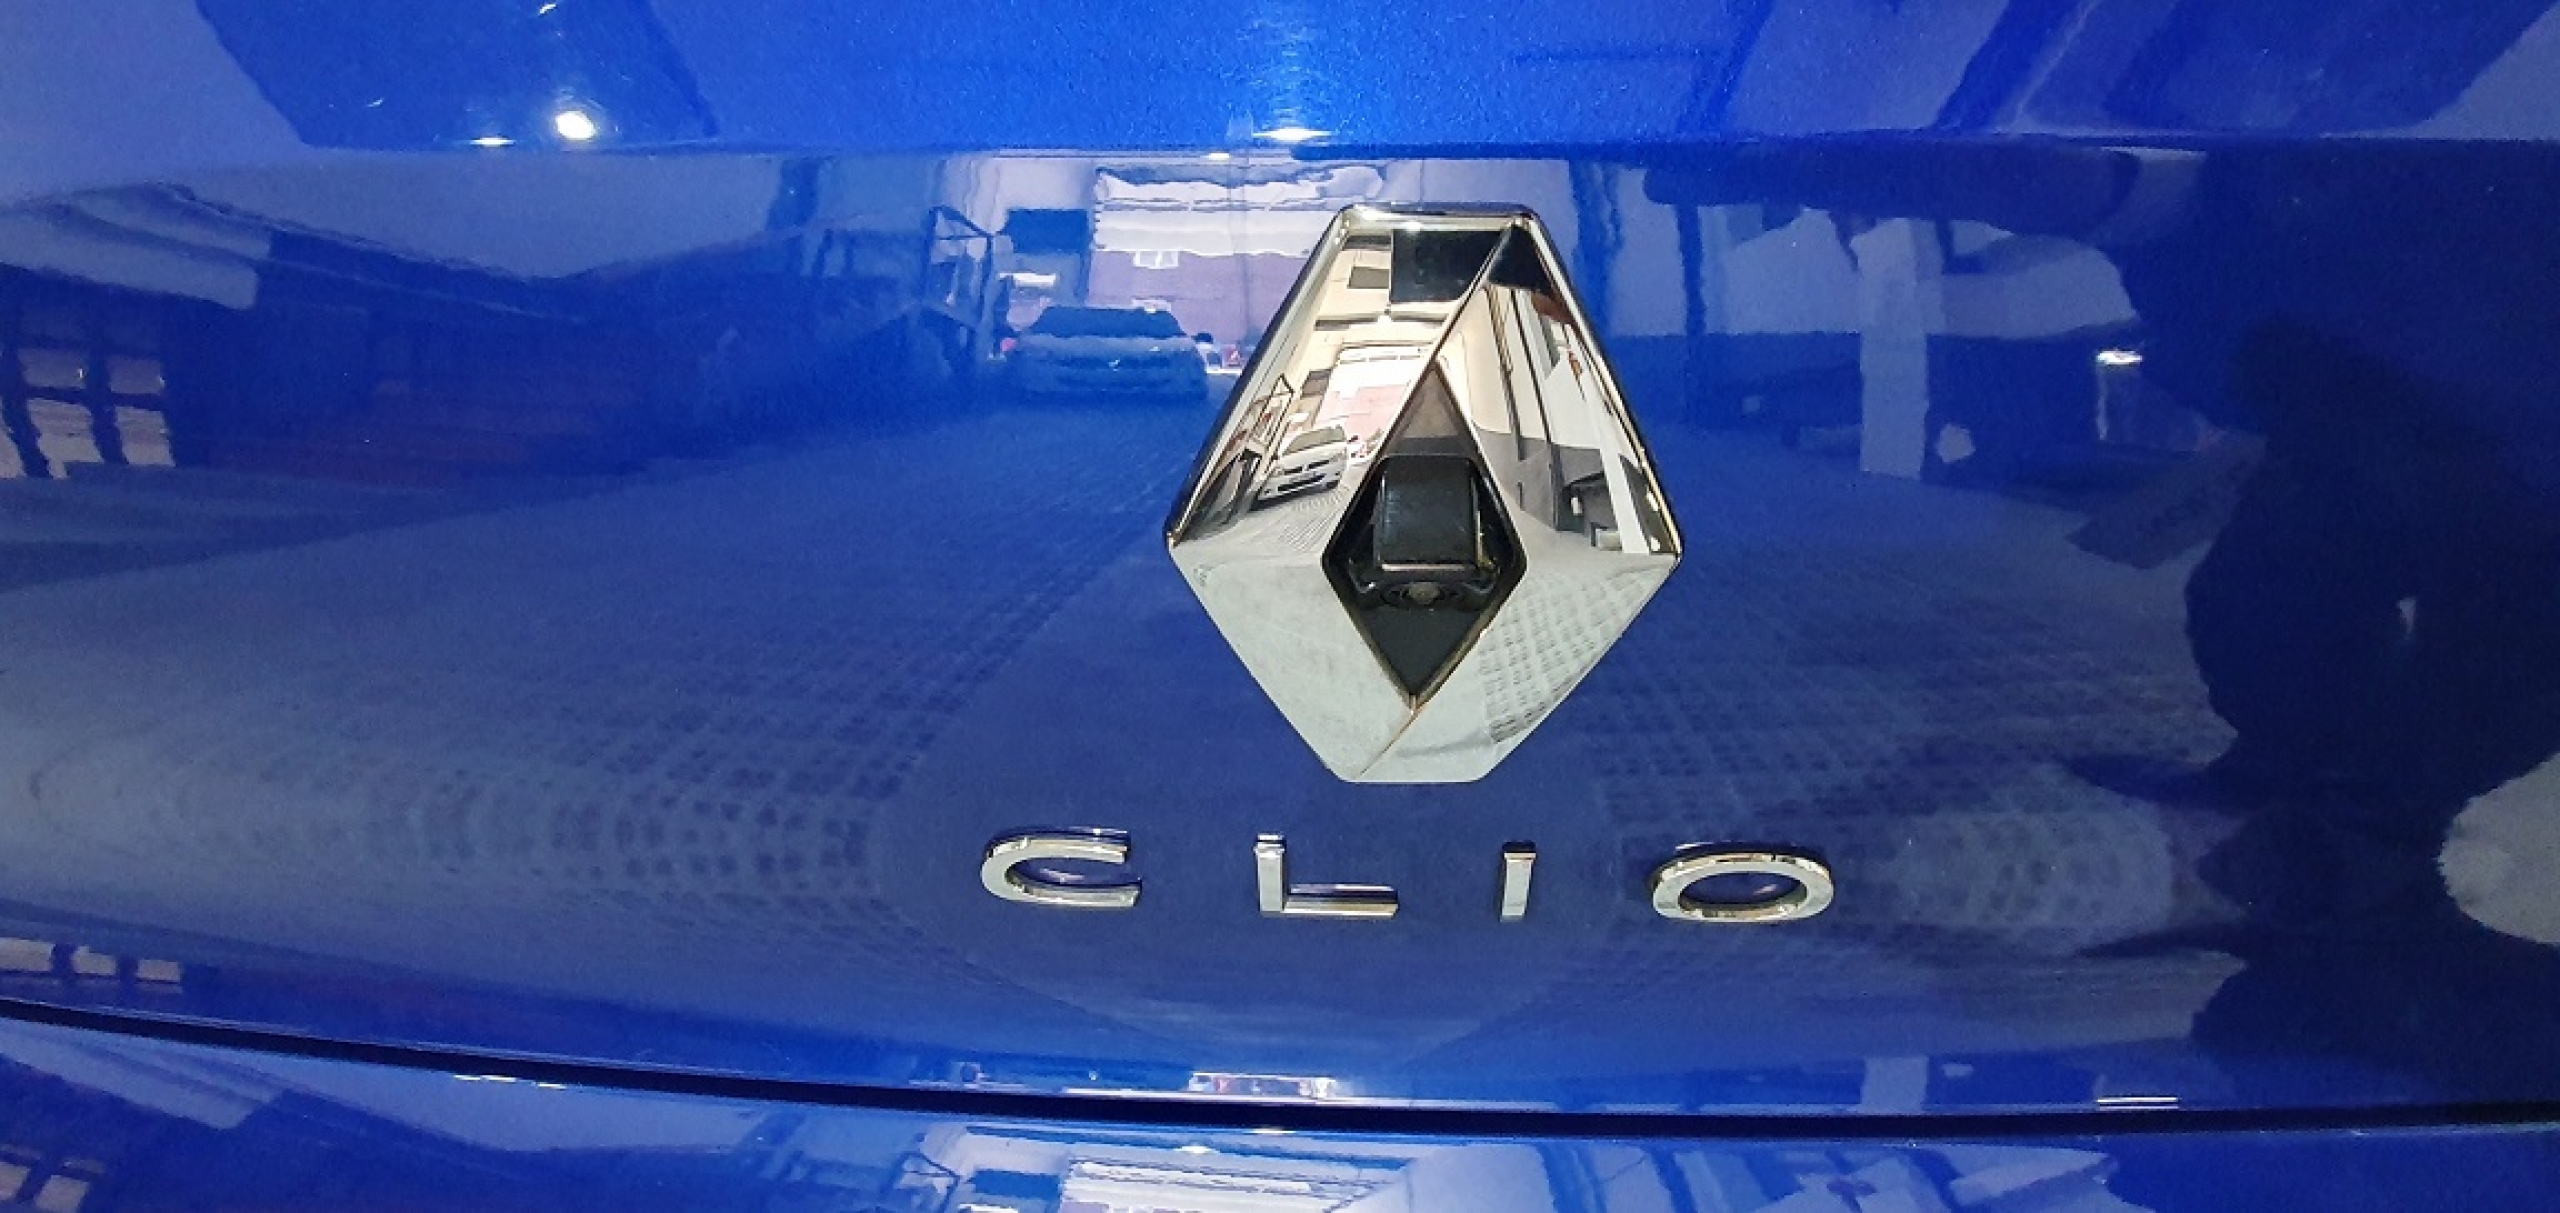 Renault Clio 13.900€ - Segunda mano y ocasión